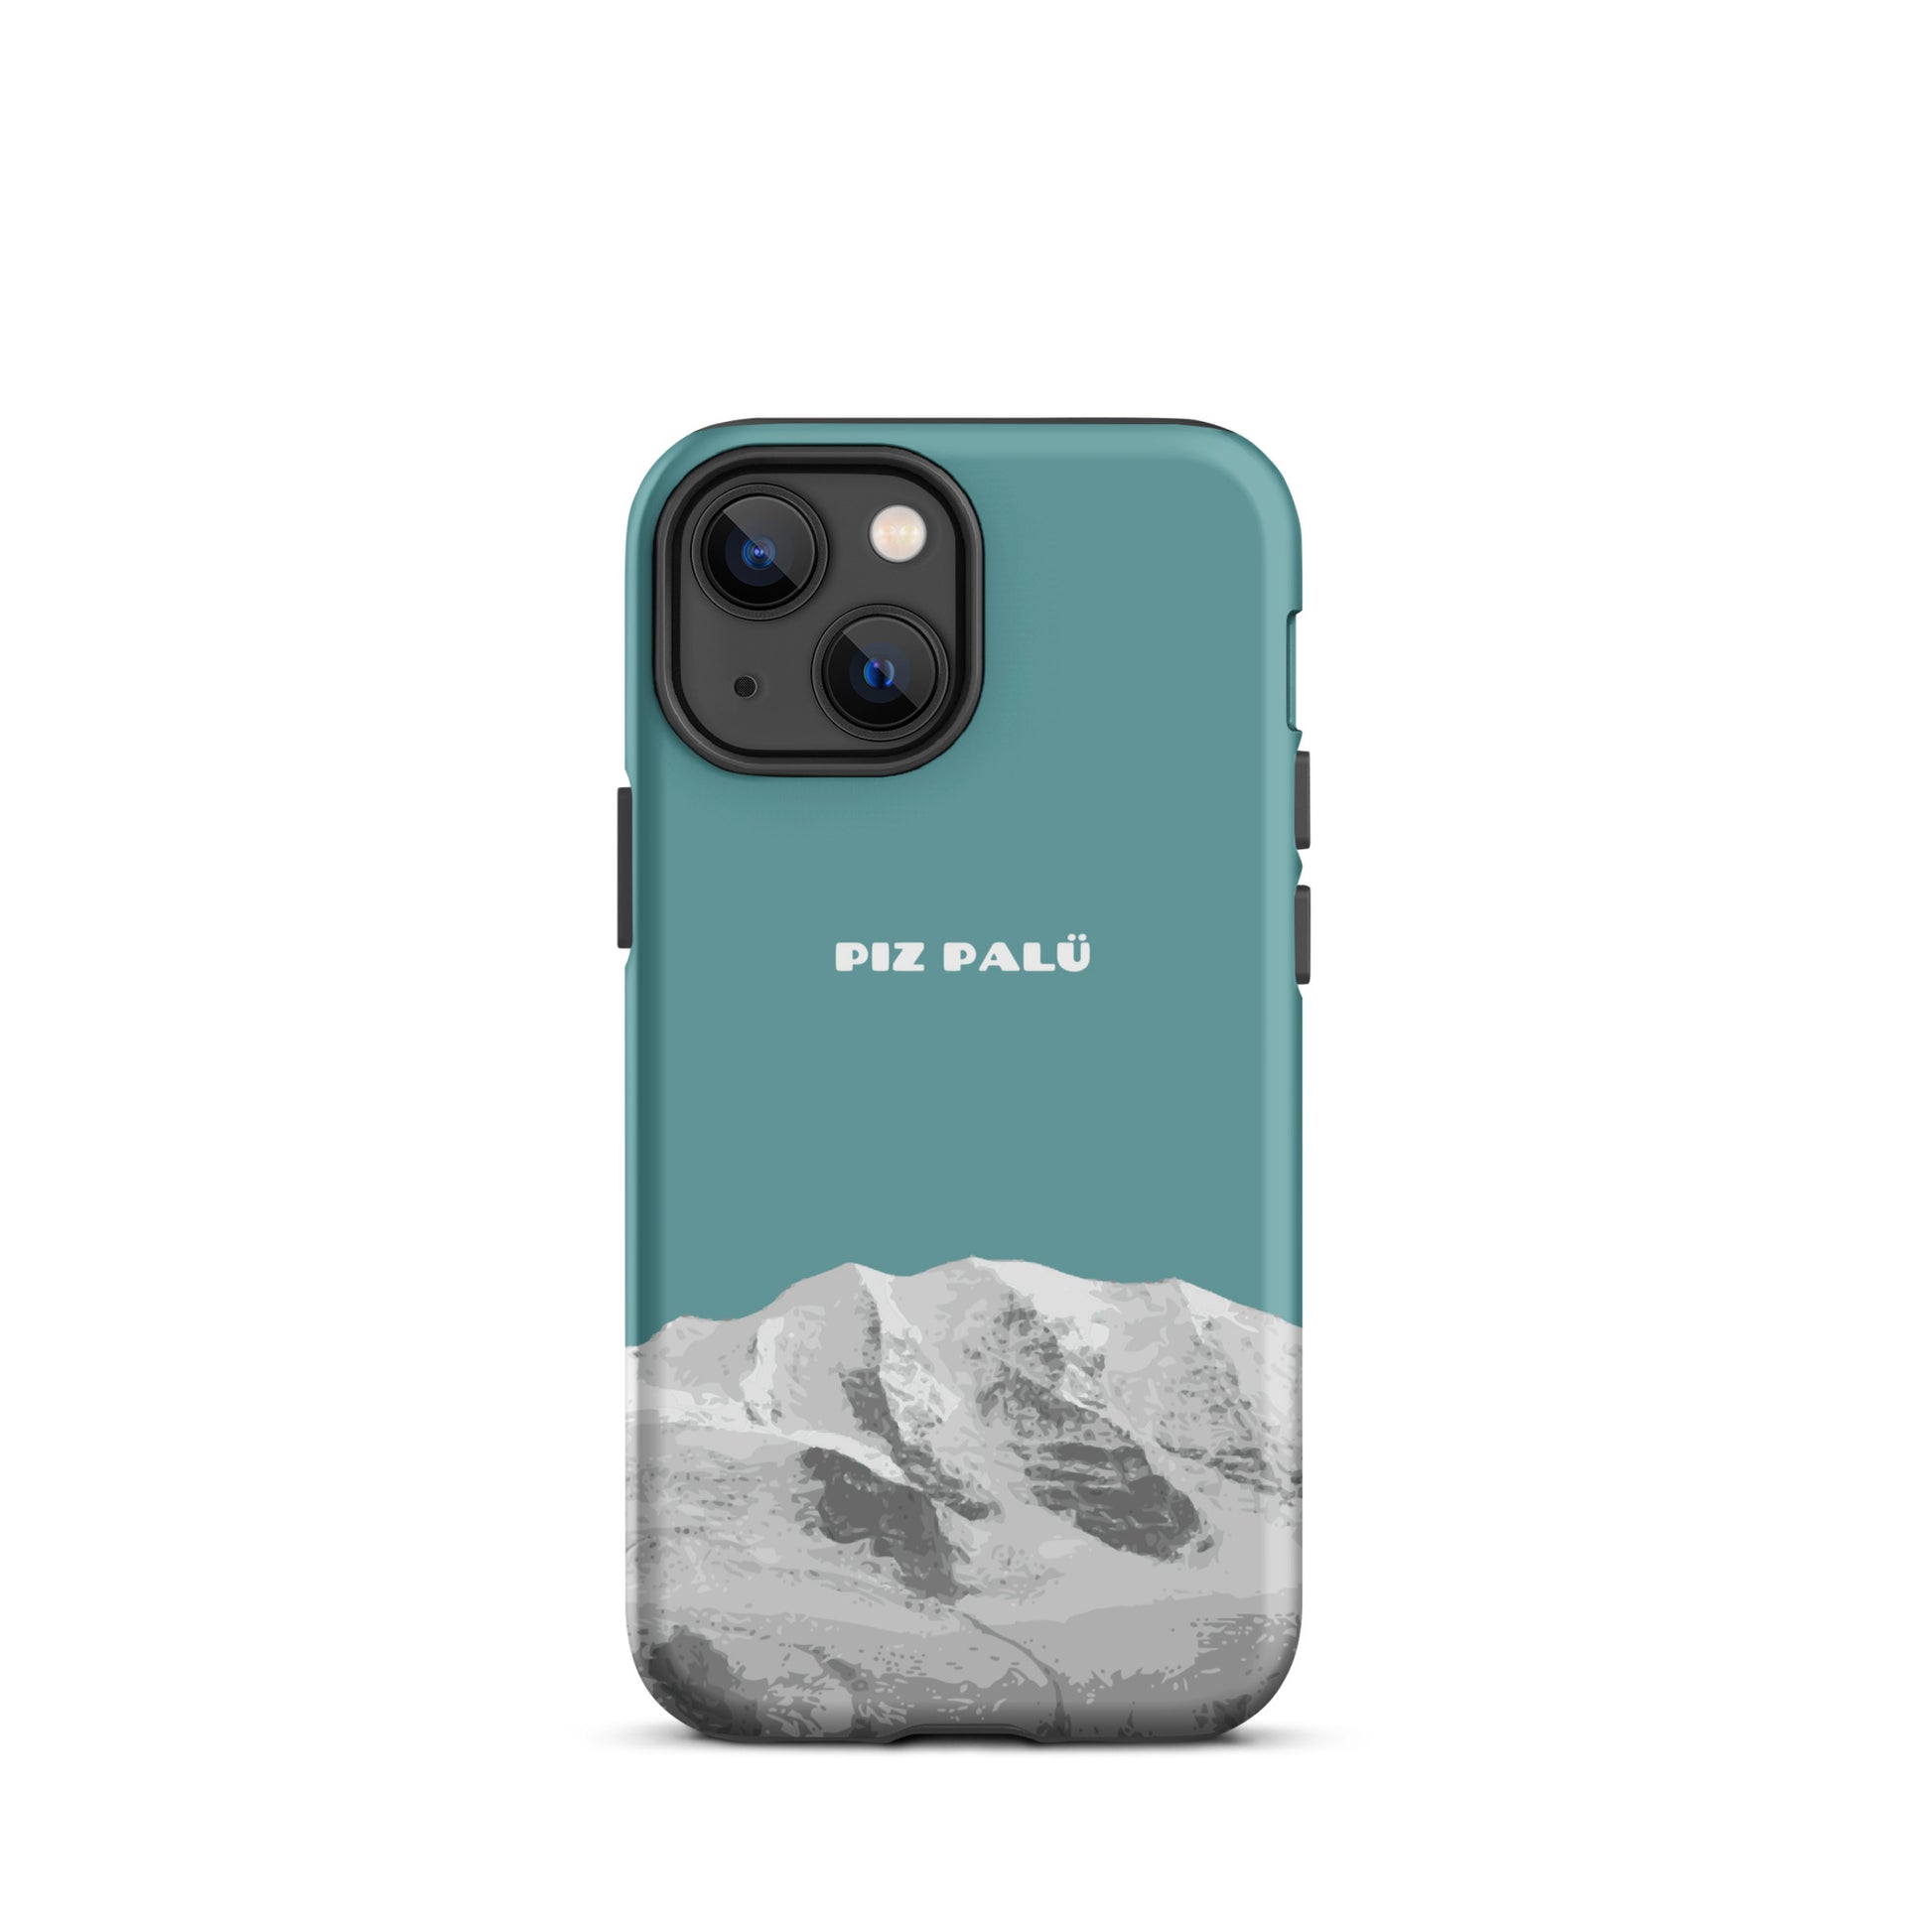 Hülle für das iPhone 13 Mini von Apple in der Farbe Kadettenblau, dass den Piz Palü in Graubünden zeigt.